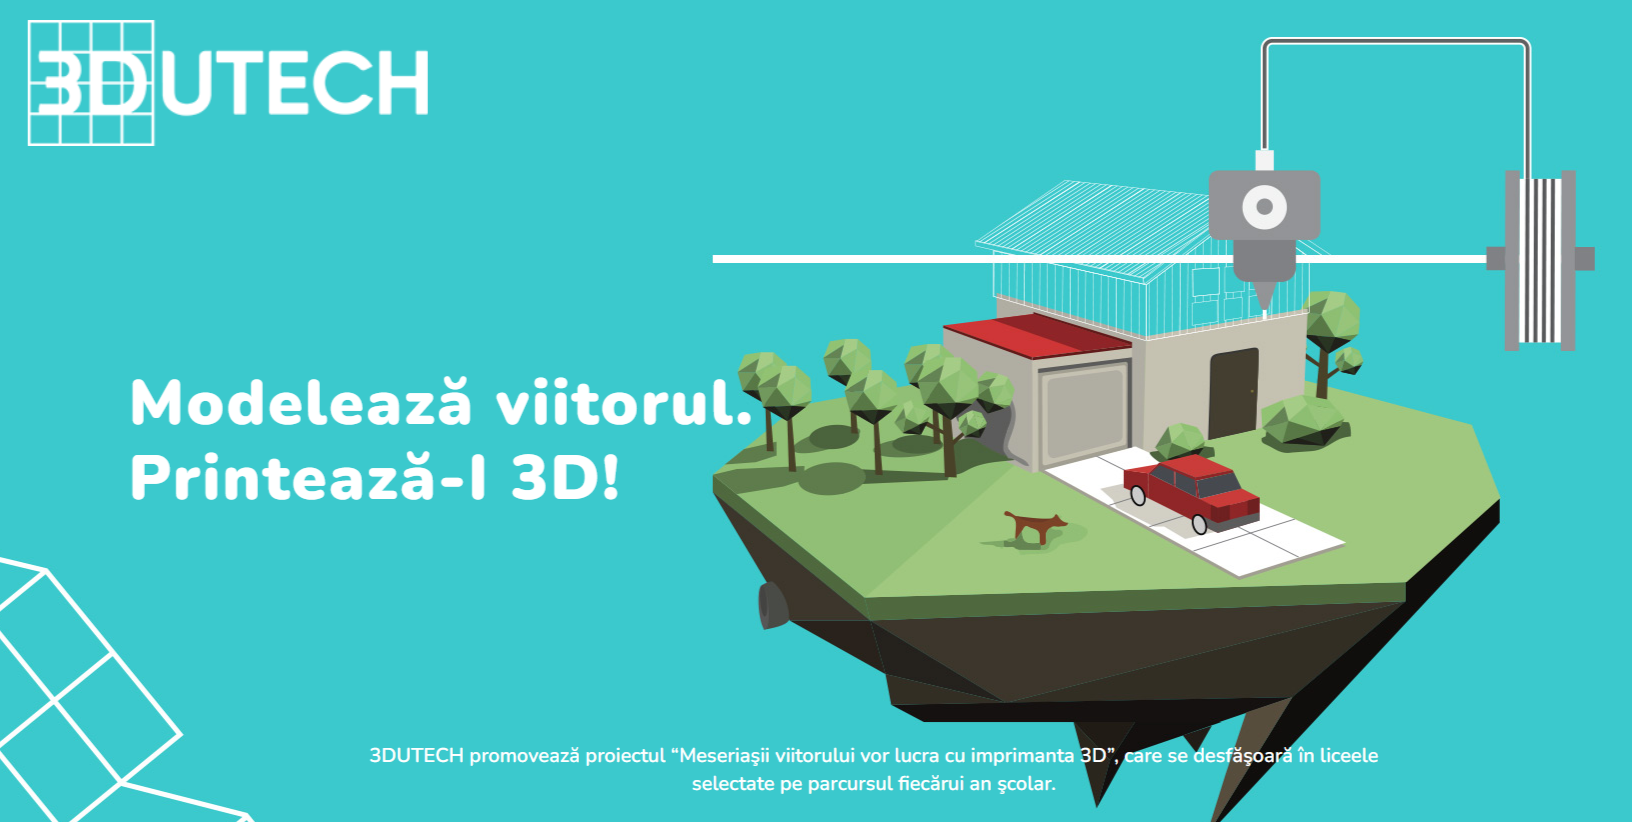 iLikeIT. Elevii din România pot învăța gratuit cum să printeze 3D prin programul EduTech